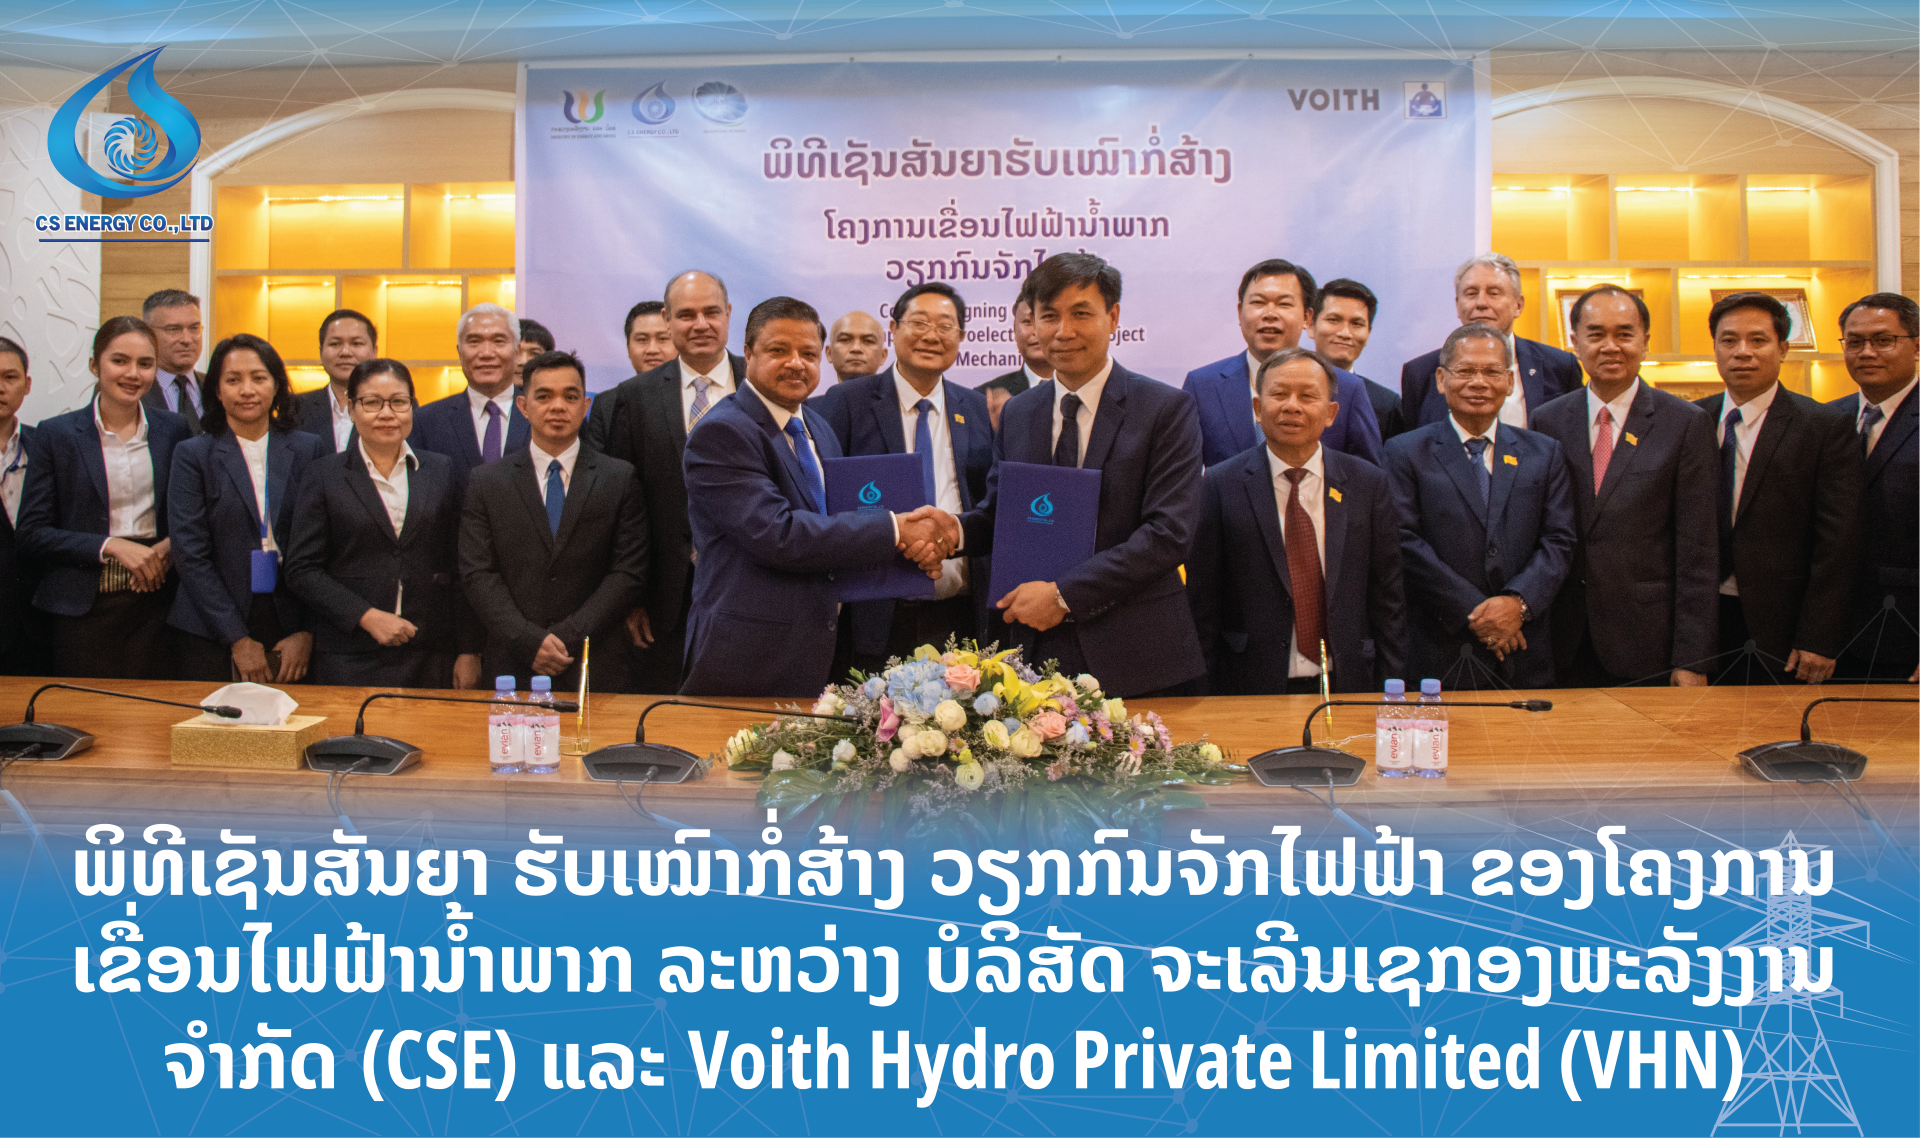 ພິທີເຊັນສັນຍາ ຮັບເໝົາກໍ່ສ້າງ ວຽກກົນຈັກໄຟຟ້າ ຂອງໂຄງການເຂື່ອນໄຟຟ້ານໍ້າພາກ ລະຫວ່າງ ບໍລິສັດ ຈະເລີນເຊກອງພະລັງງານ ຈໍາກັດ (CSE) ແລະ ບໍລິສັດ Voith Hydro Private Limited (VHN)